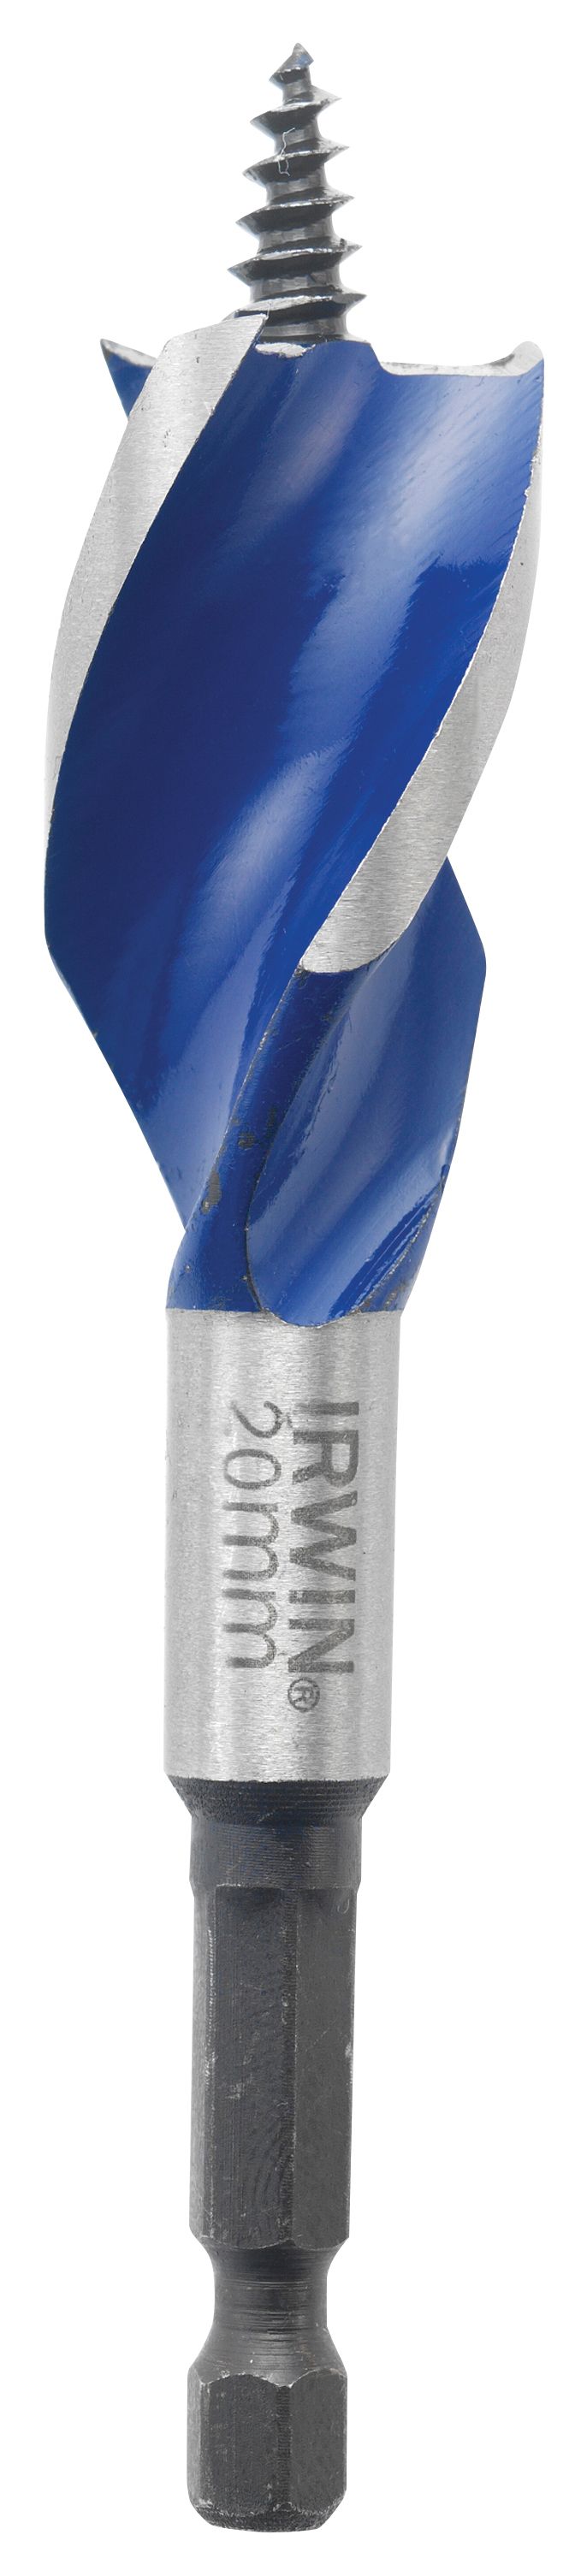 Irwin 10506625 Ir x 6 Blue Groove Speedbor Wood Bit - 159 x 28mm